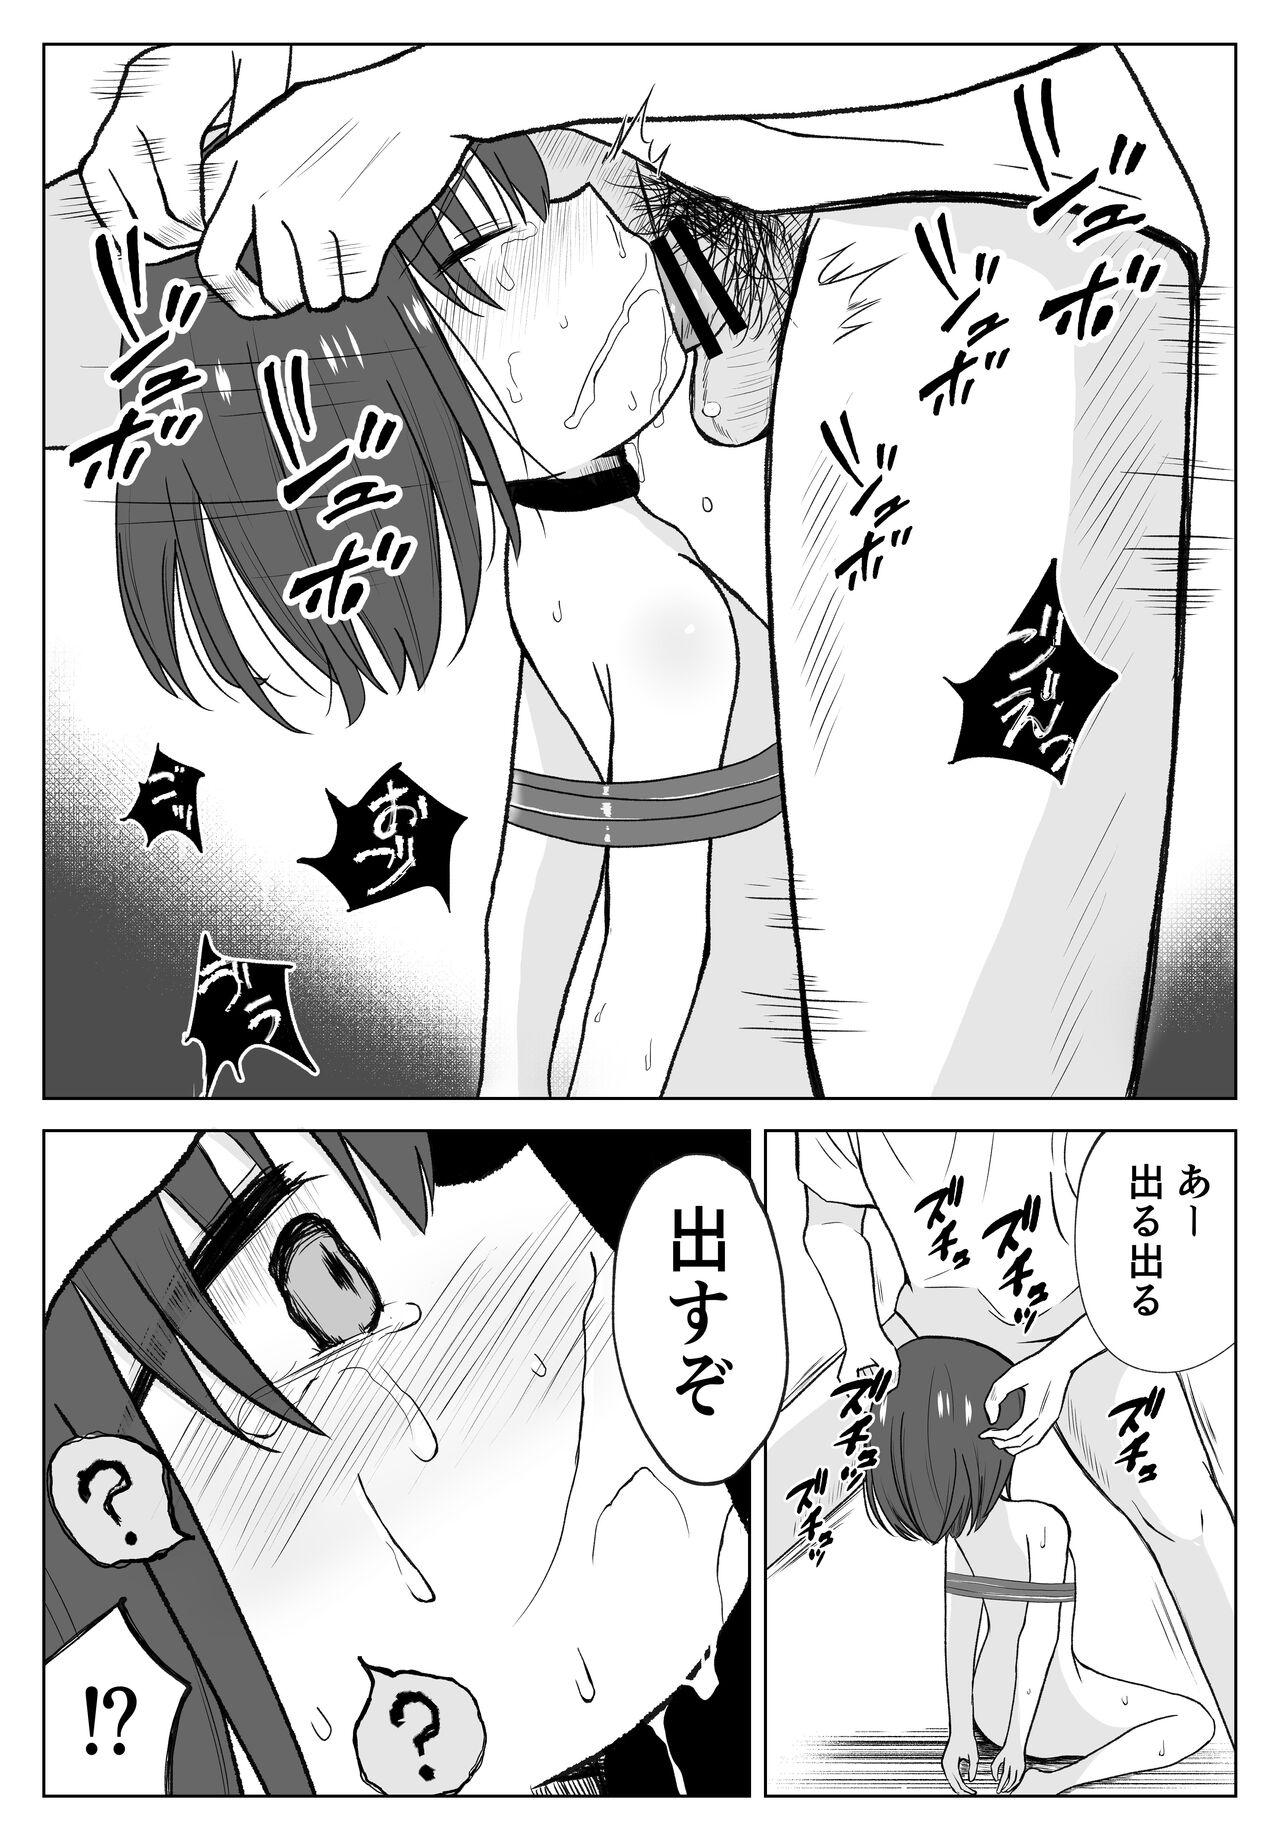 Buttfucking Gachiboko Au-chan - Original Public Sex - Page 11